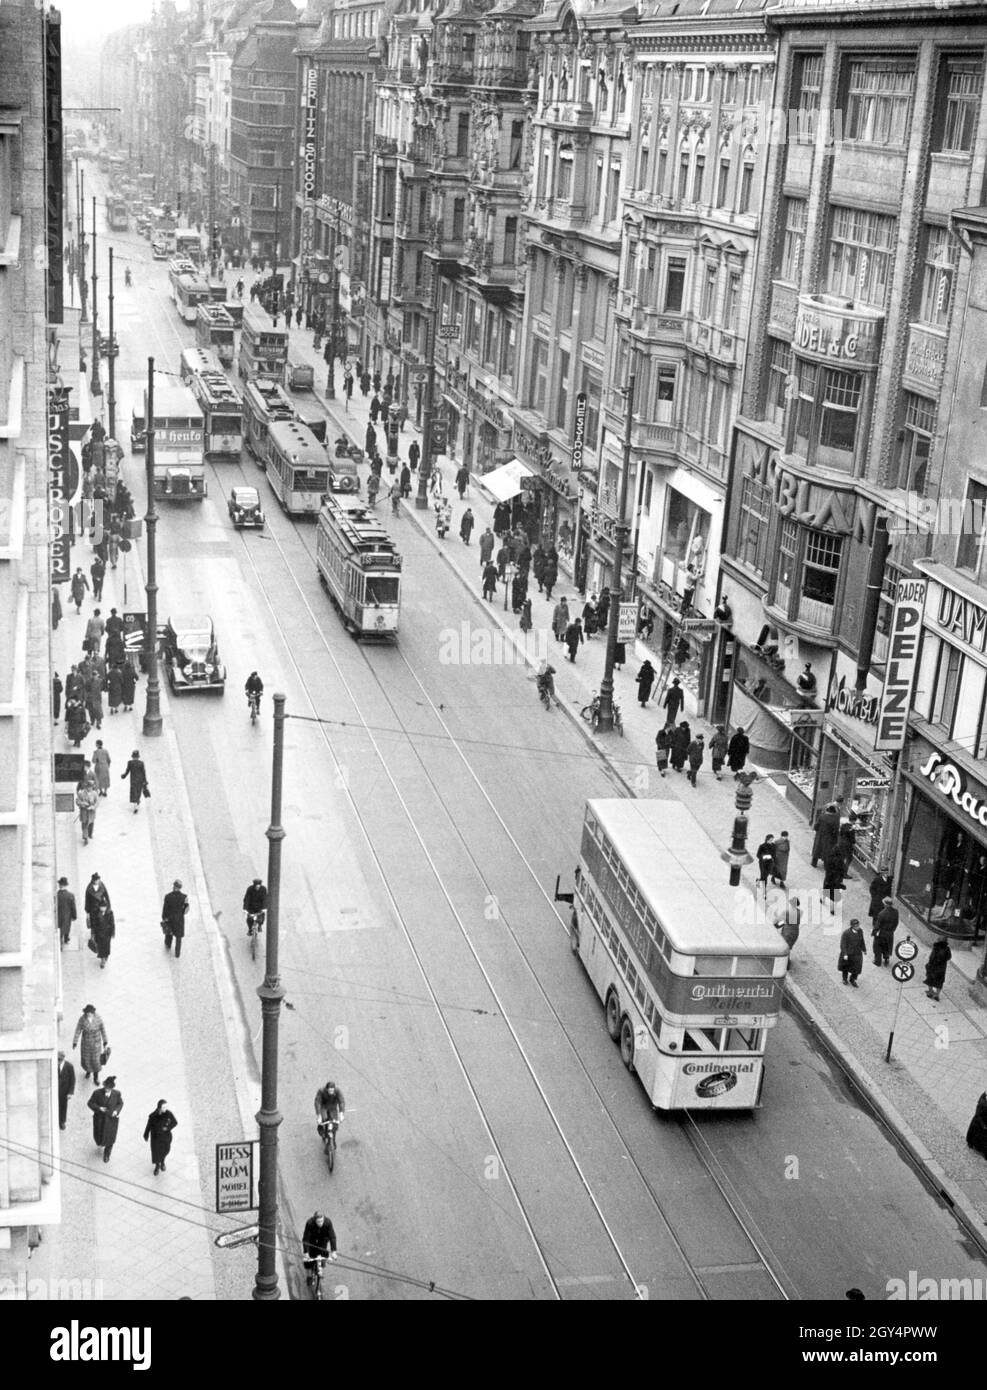 „Busse und Straßenbahnen fahren am 25. Januar 1938 auf der Leipziger Straße in Berlin-Mitte. Der Frontbus wirbt mit „Continental Tyres“. Der Blick geht von der Friedrichstraße in Richtung Mauerstraße und Leipziger Platz. Die Straße ist mit Geschäften gesäumt, darunter ''S. Rader Pelze'', ''Montblanc'', ''Hess und Rom Möbel'', eine Parfümerie, ''Herz Röcke'', eine ''Berlitz School'' (rechte Straßenseite) und ein ''J. Schröder'' Shop neben dem Hotel Kempinski (links von der Straße). [Automatisierte Übersetzung]' Stockfoto